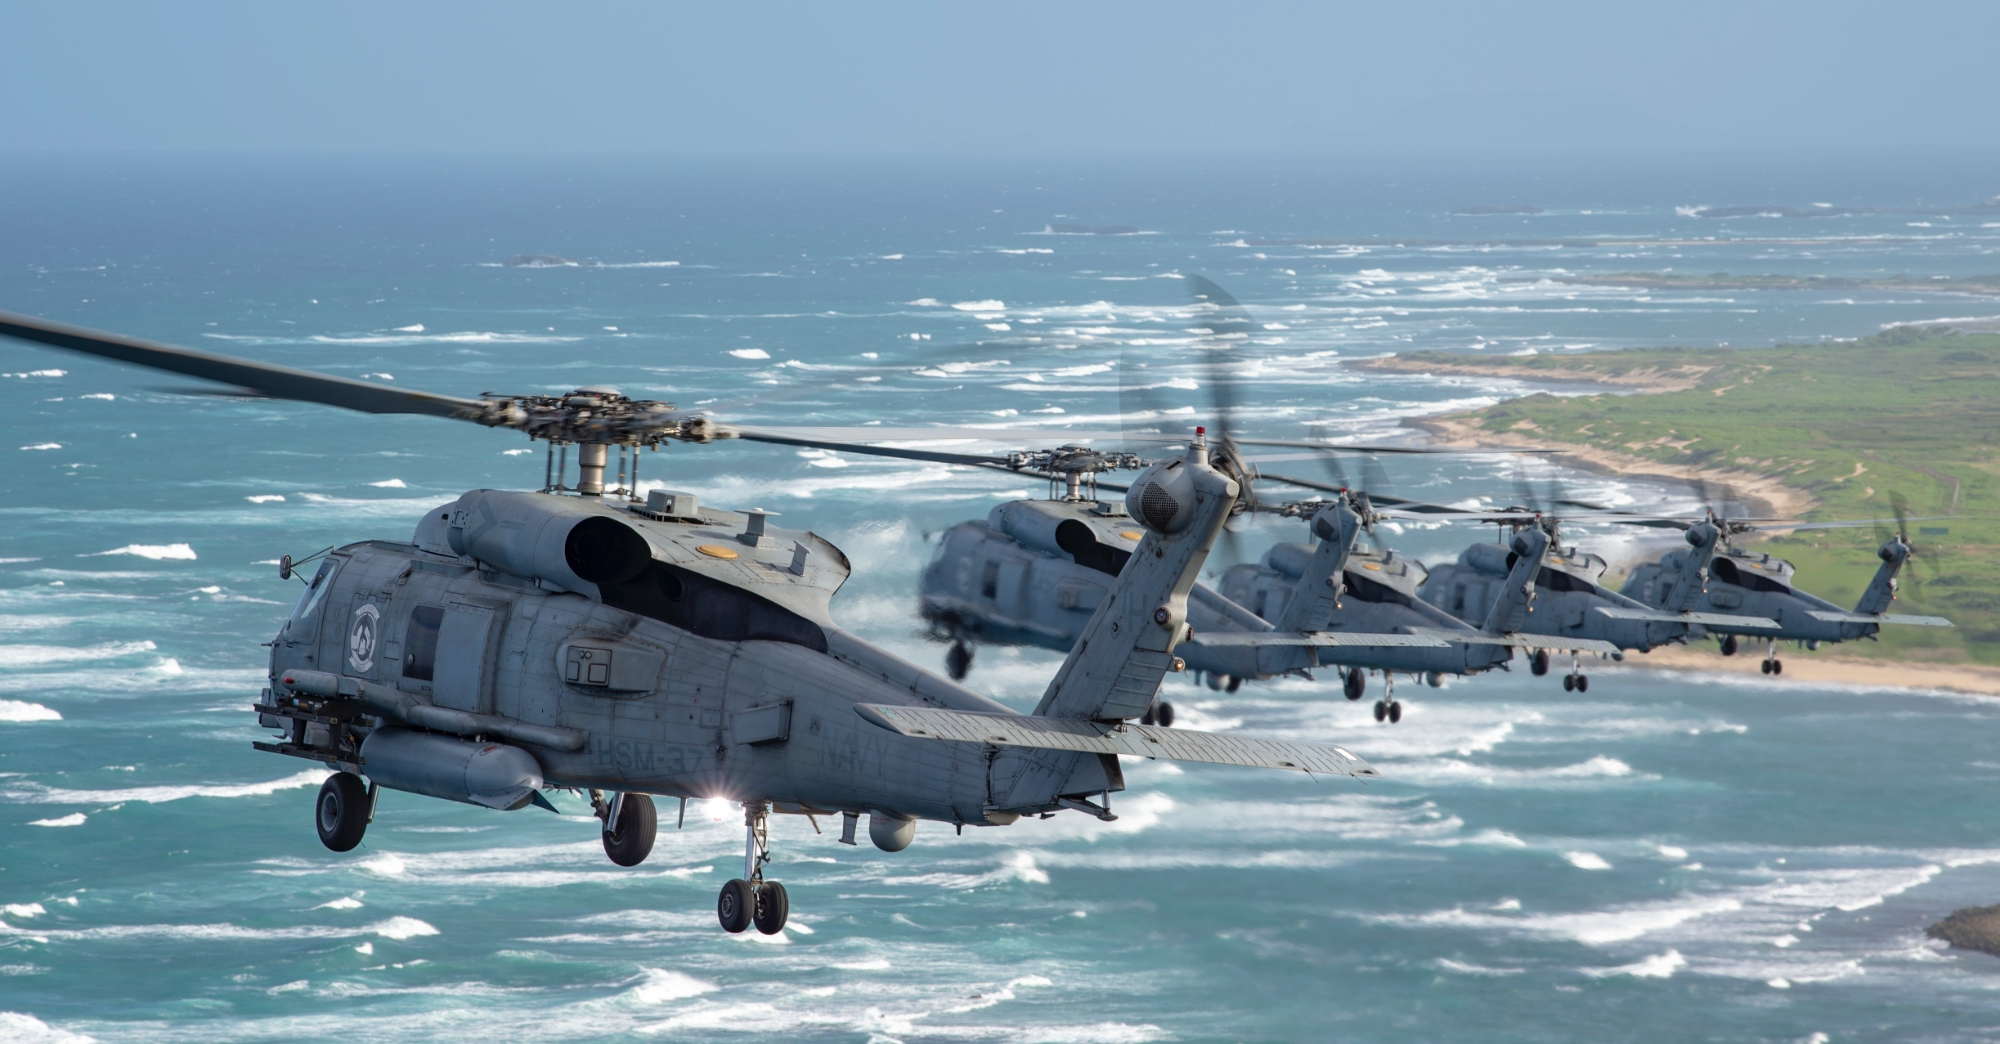 Kontrakt på 380 millioner dollar: Spania bestiller 8 Sikorsky MH-60R Seahawk-helikoptre fra Lockheed Martin for å erstatte Sikorsky SH-3 Sea King-helikoptrene.